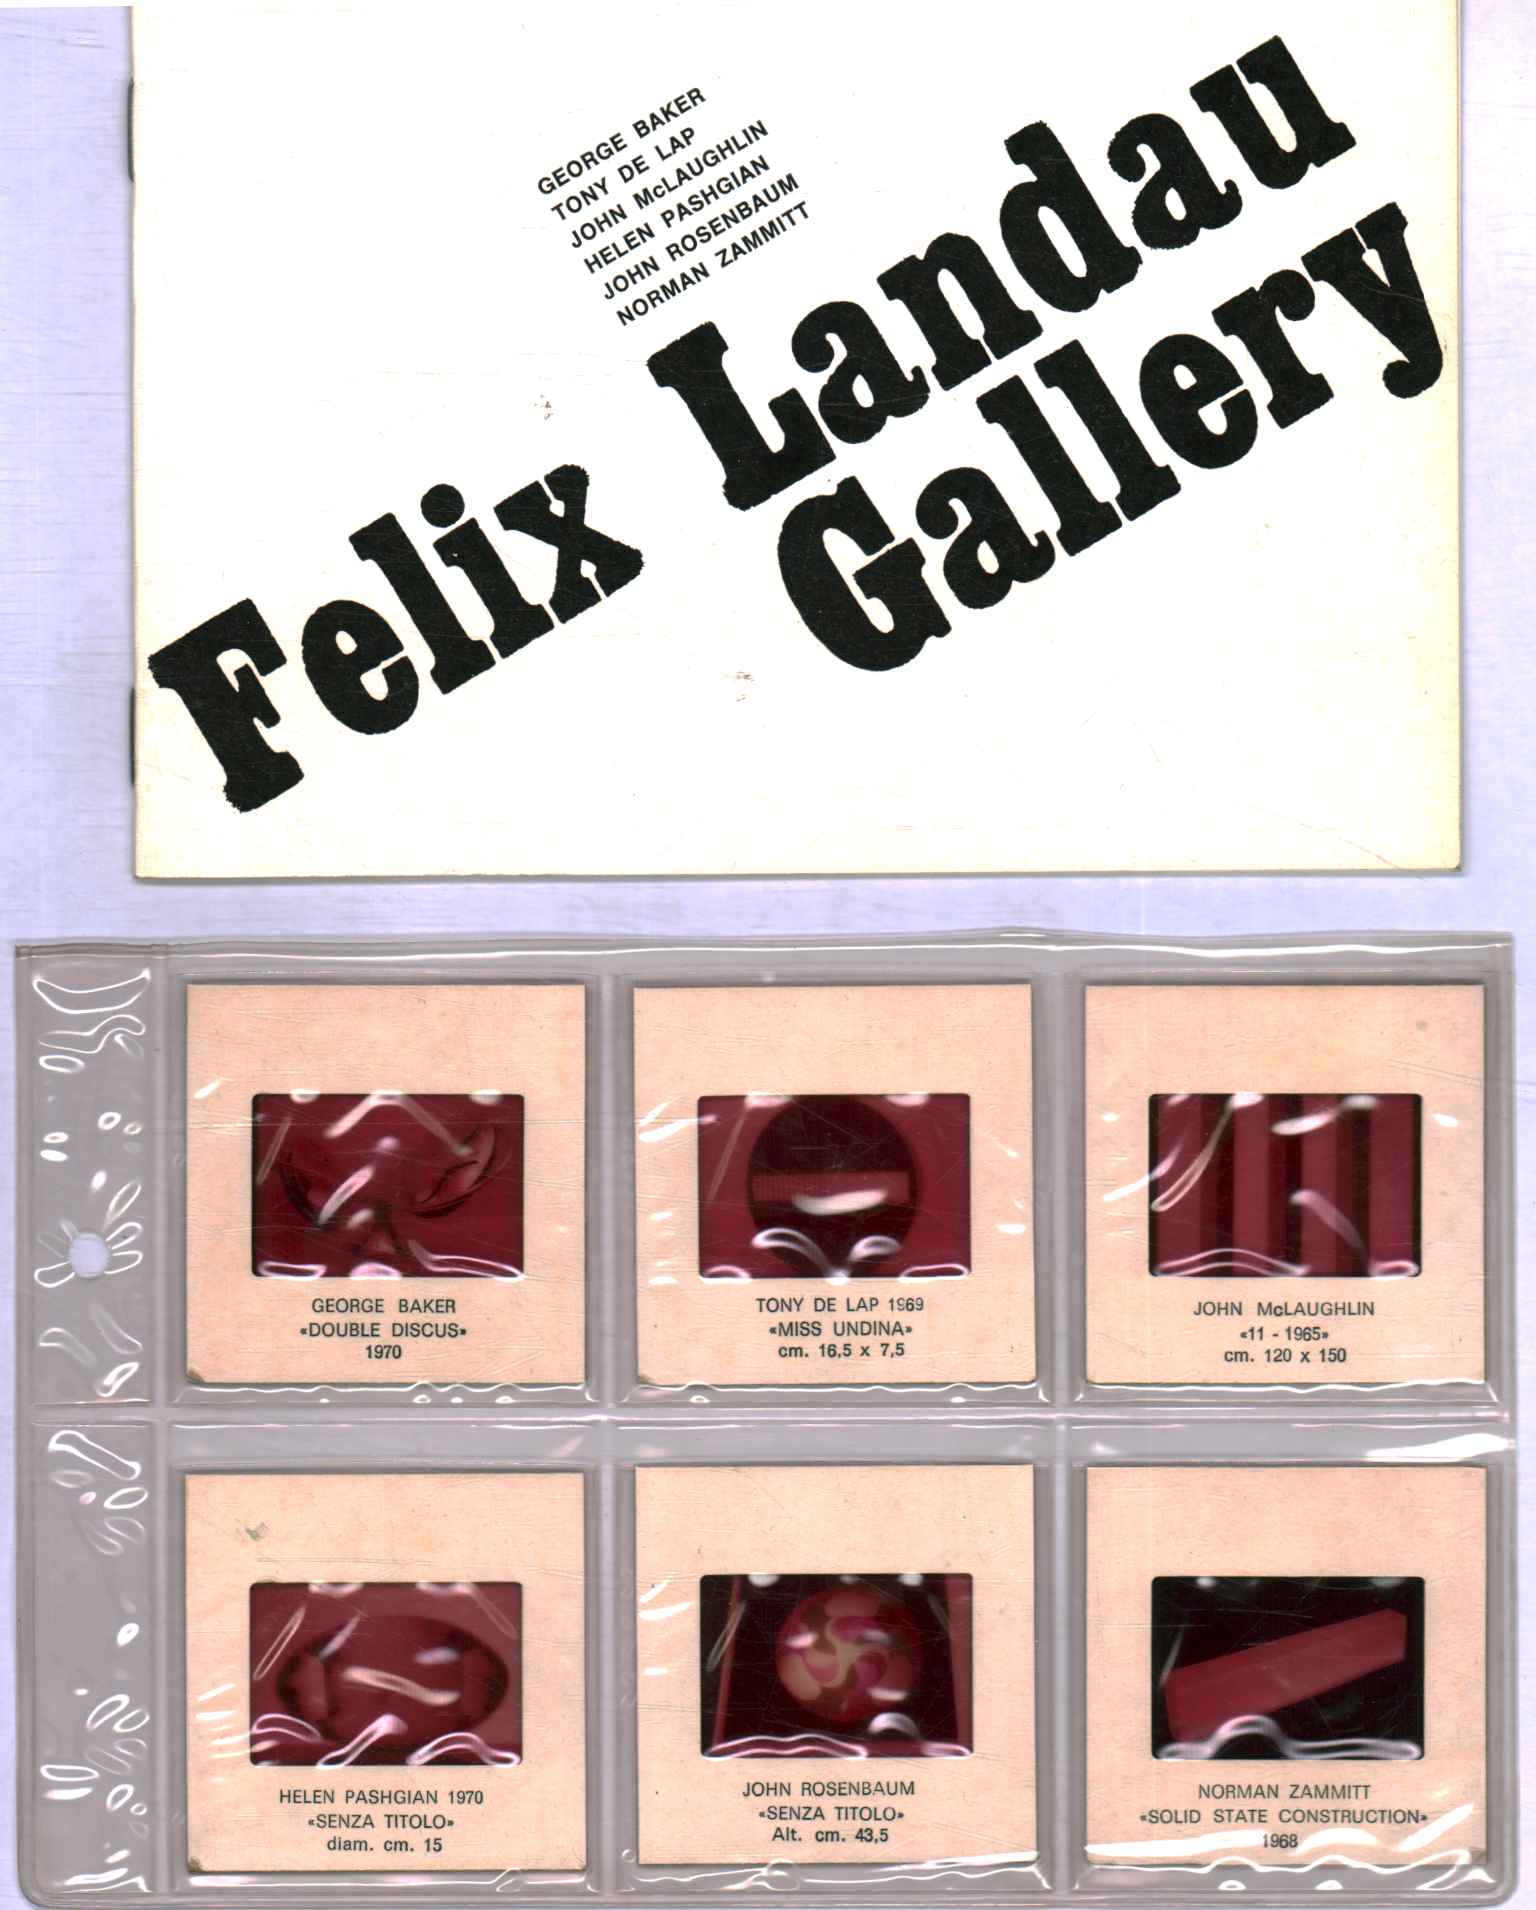 Galería Félix Landau,Galería Félix Landau